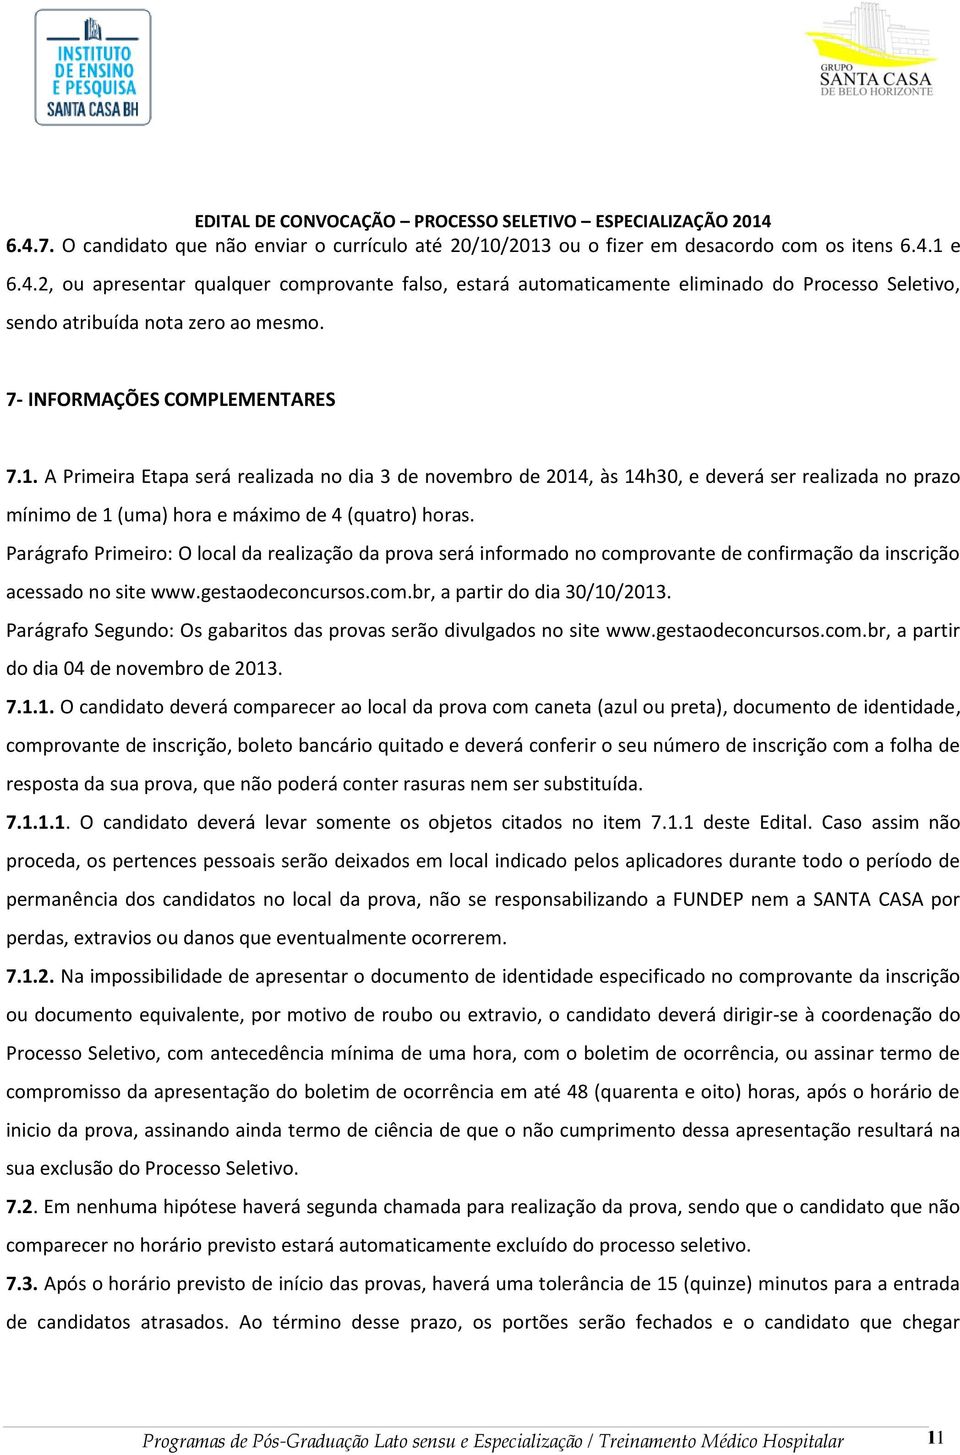 Parágrafo Primeiro: O local da realização da prova será informado no comprovante de confirmação da inscrição acessado no site www.gestaodeconcursos.com.br, a partir do dia 30/10/2013.